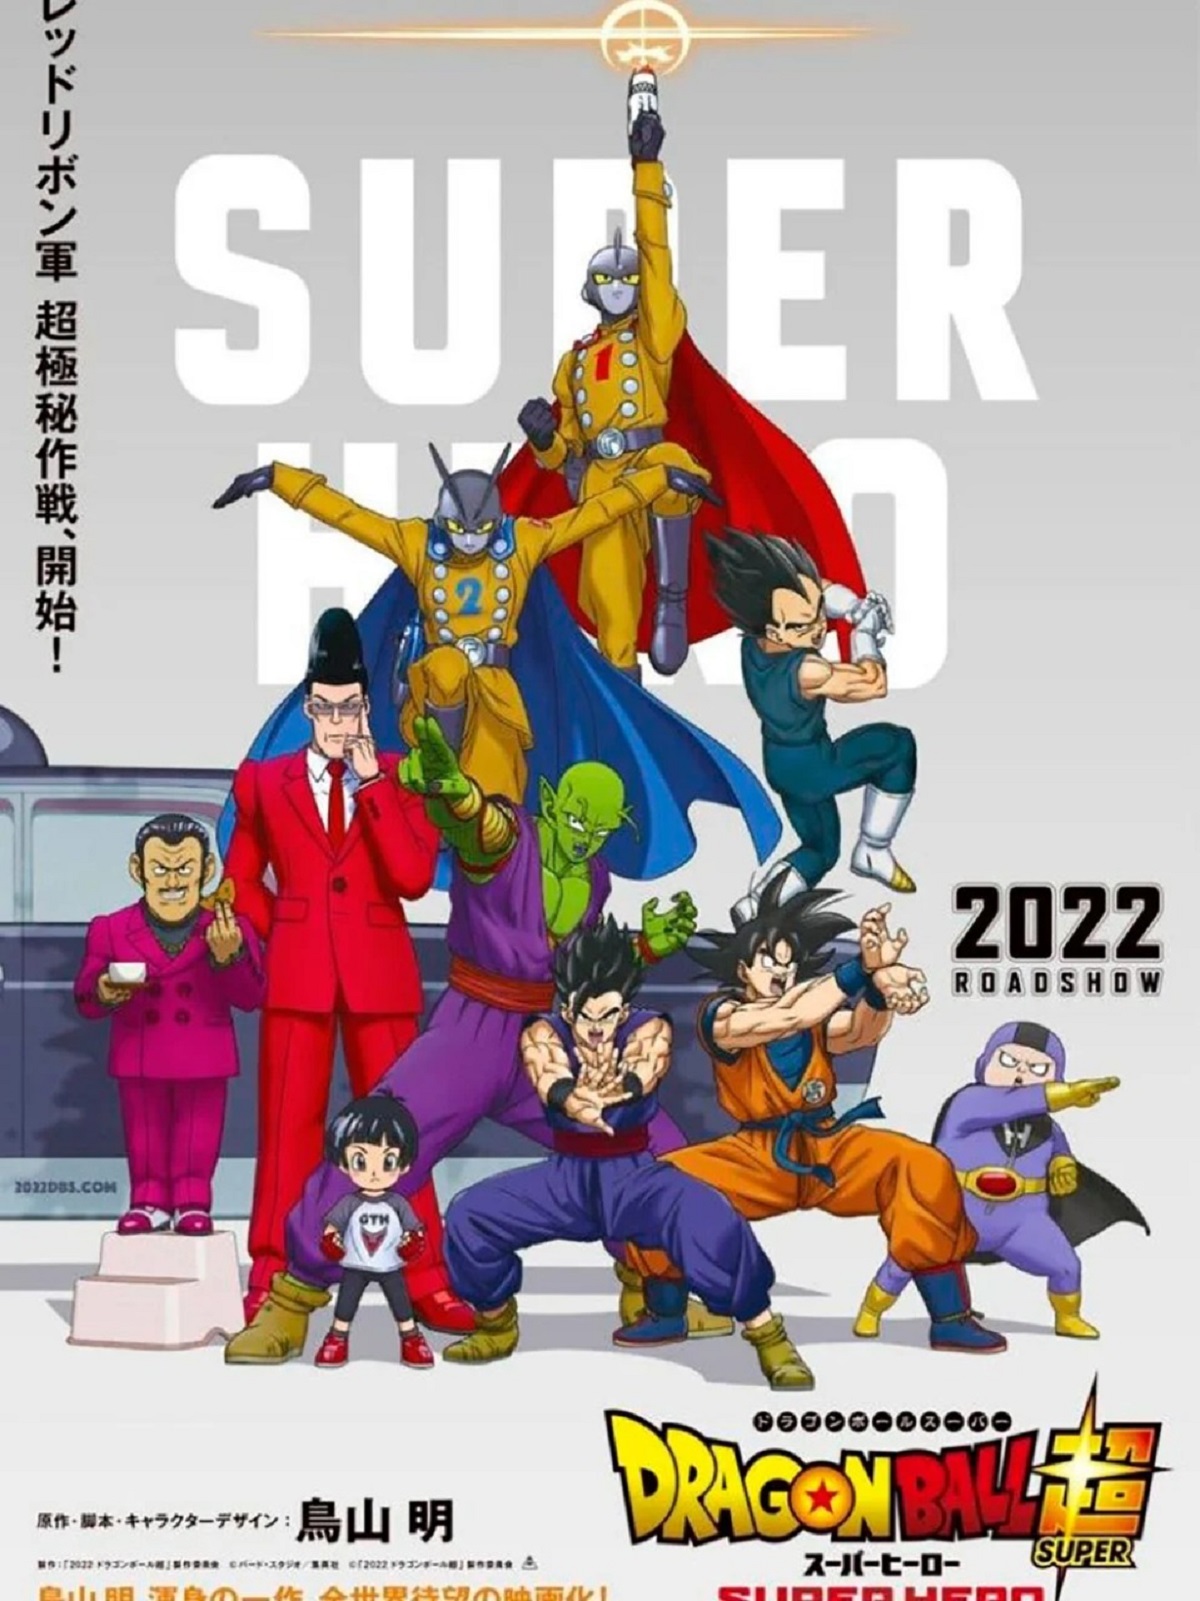 Nueva imagen promocional mostrando a los personajes que estarán presentes en la nueva película de Dragon Ball Super